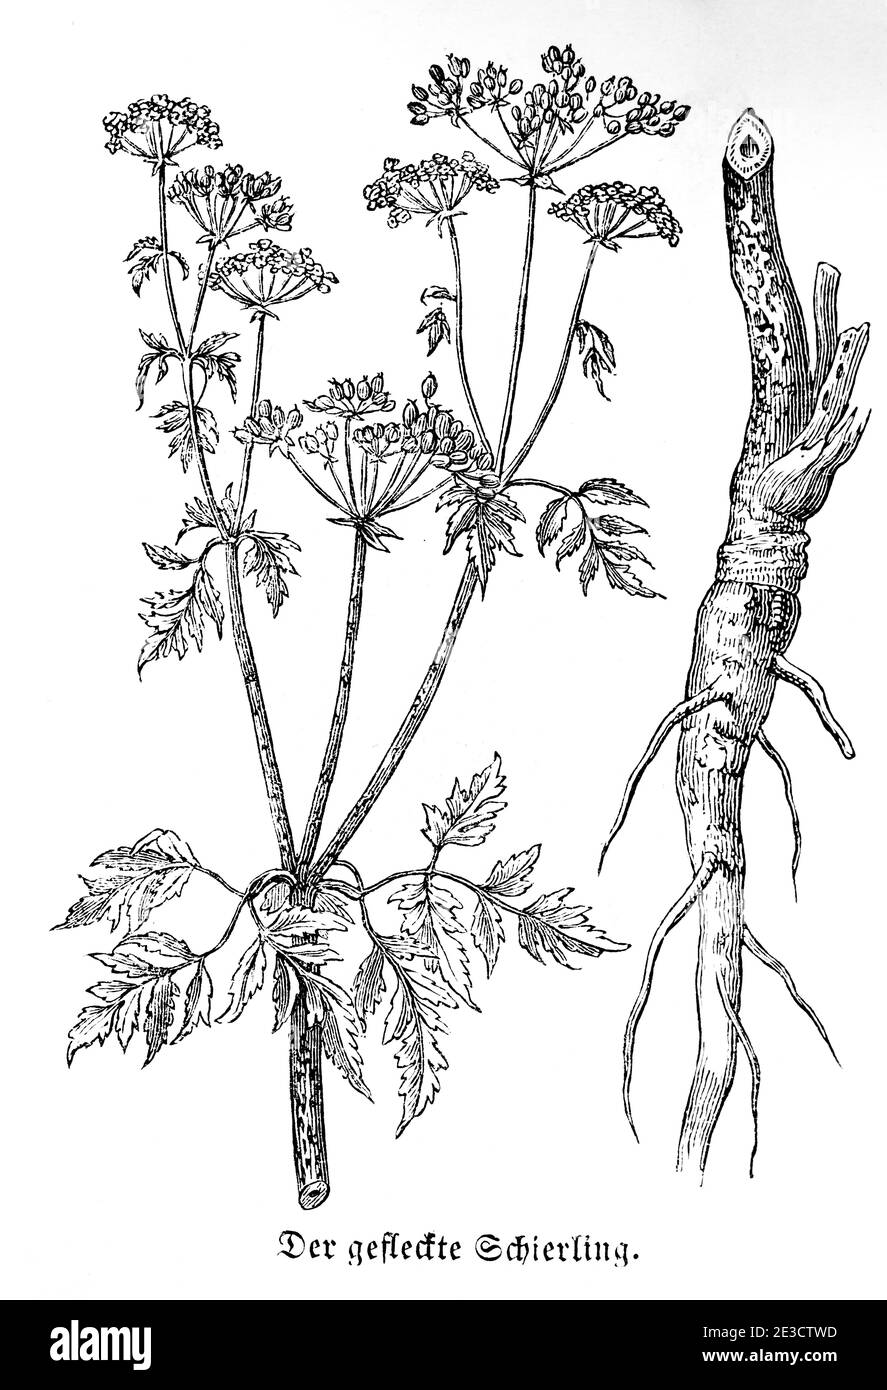 Gefleckter Schierling, (Conium maculatum) Hemlock veneno, calendario suizo con plantas venenosas y motivos correspondientes, San Gallen Suiza 1853 Foto de stock